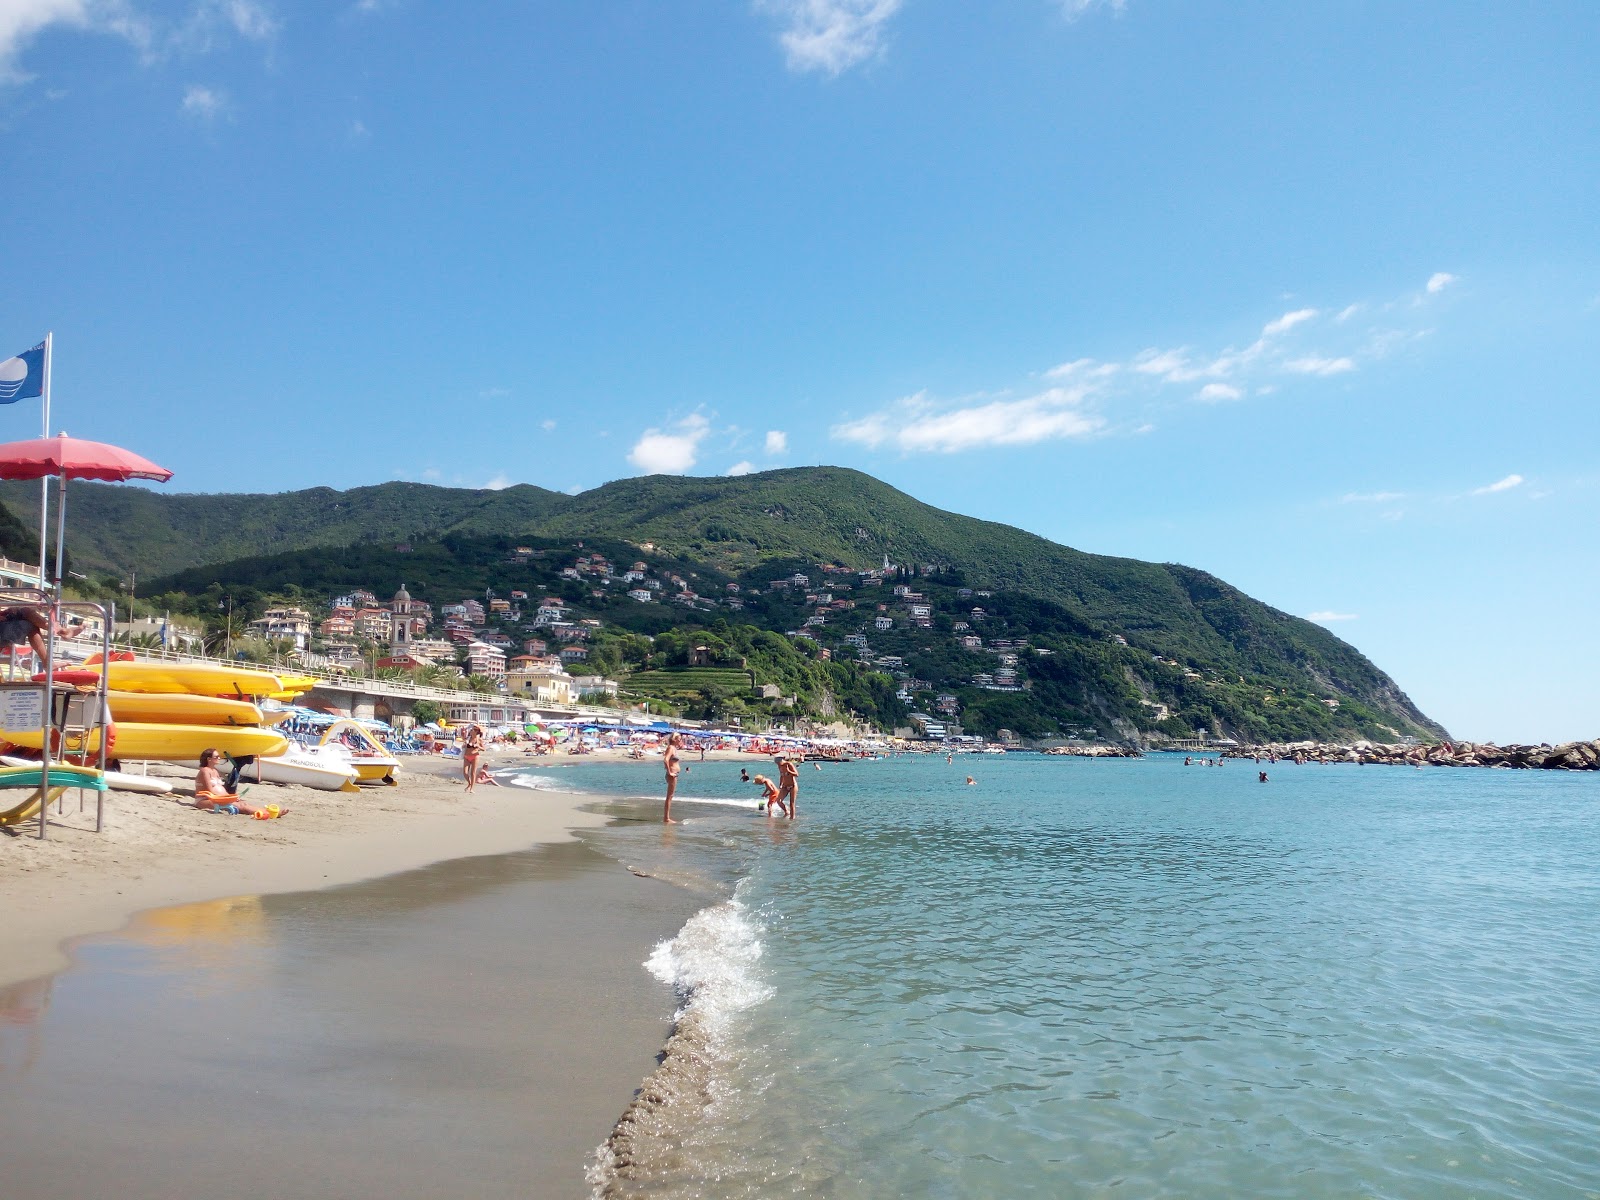 Photo of Moneglia beach beach resort area